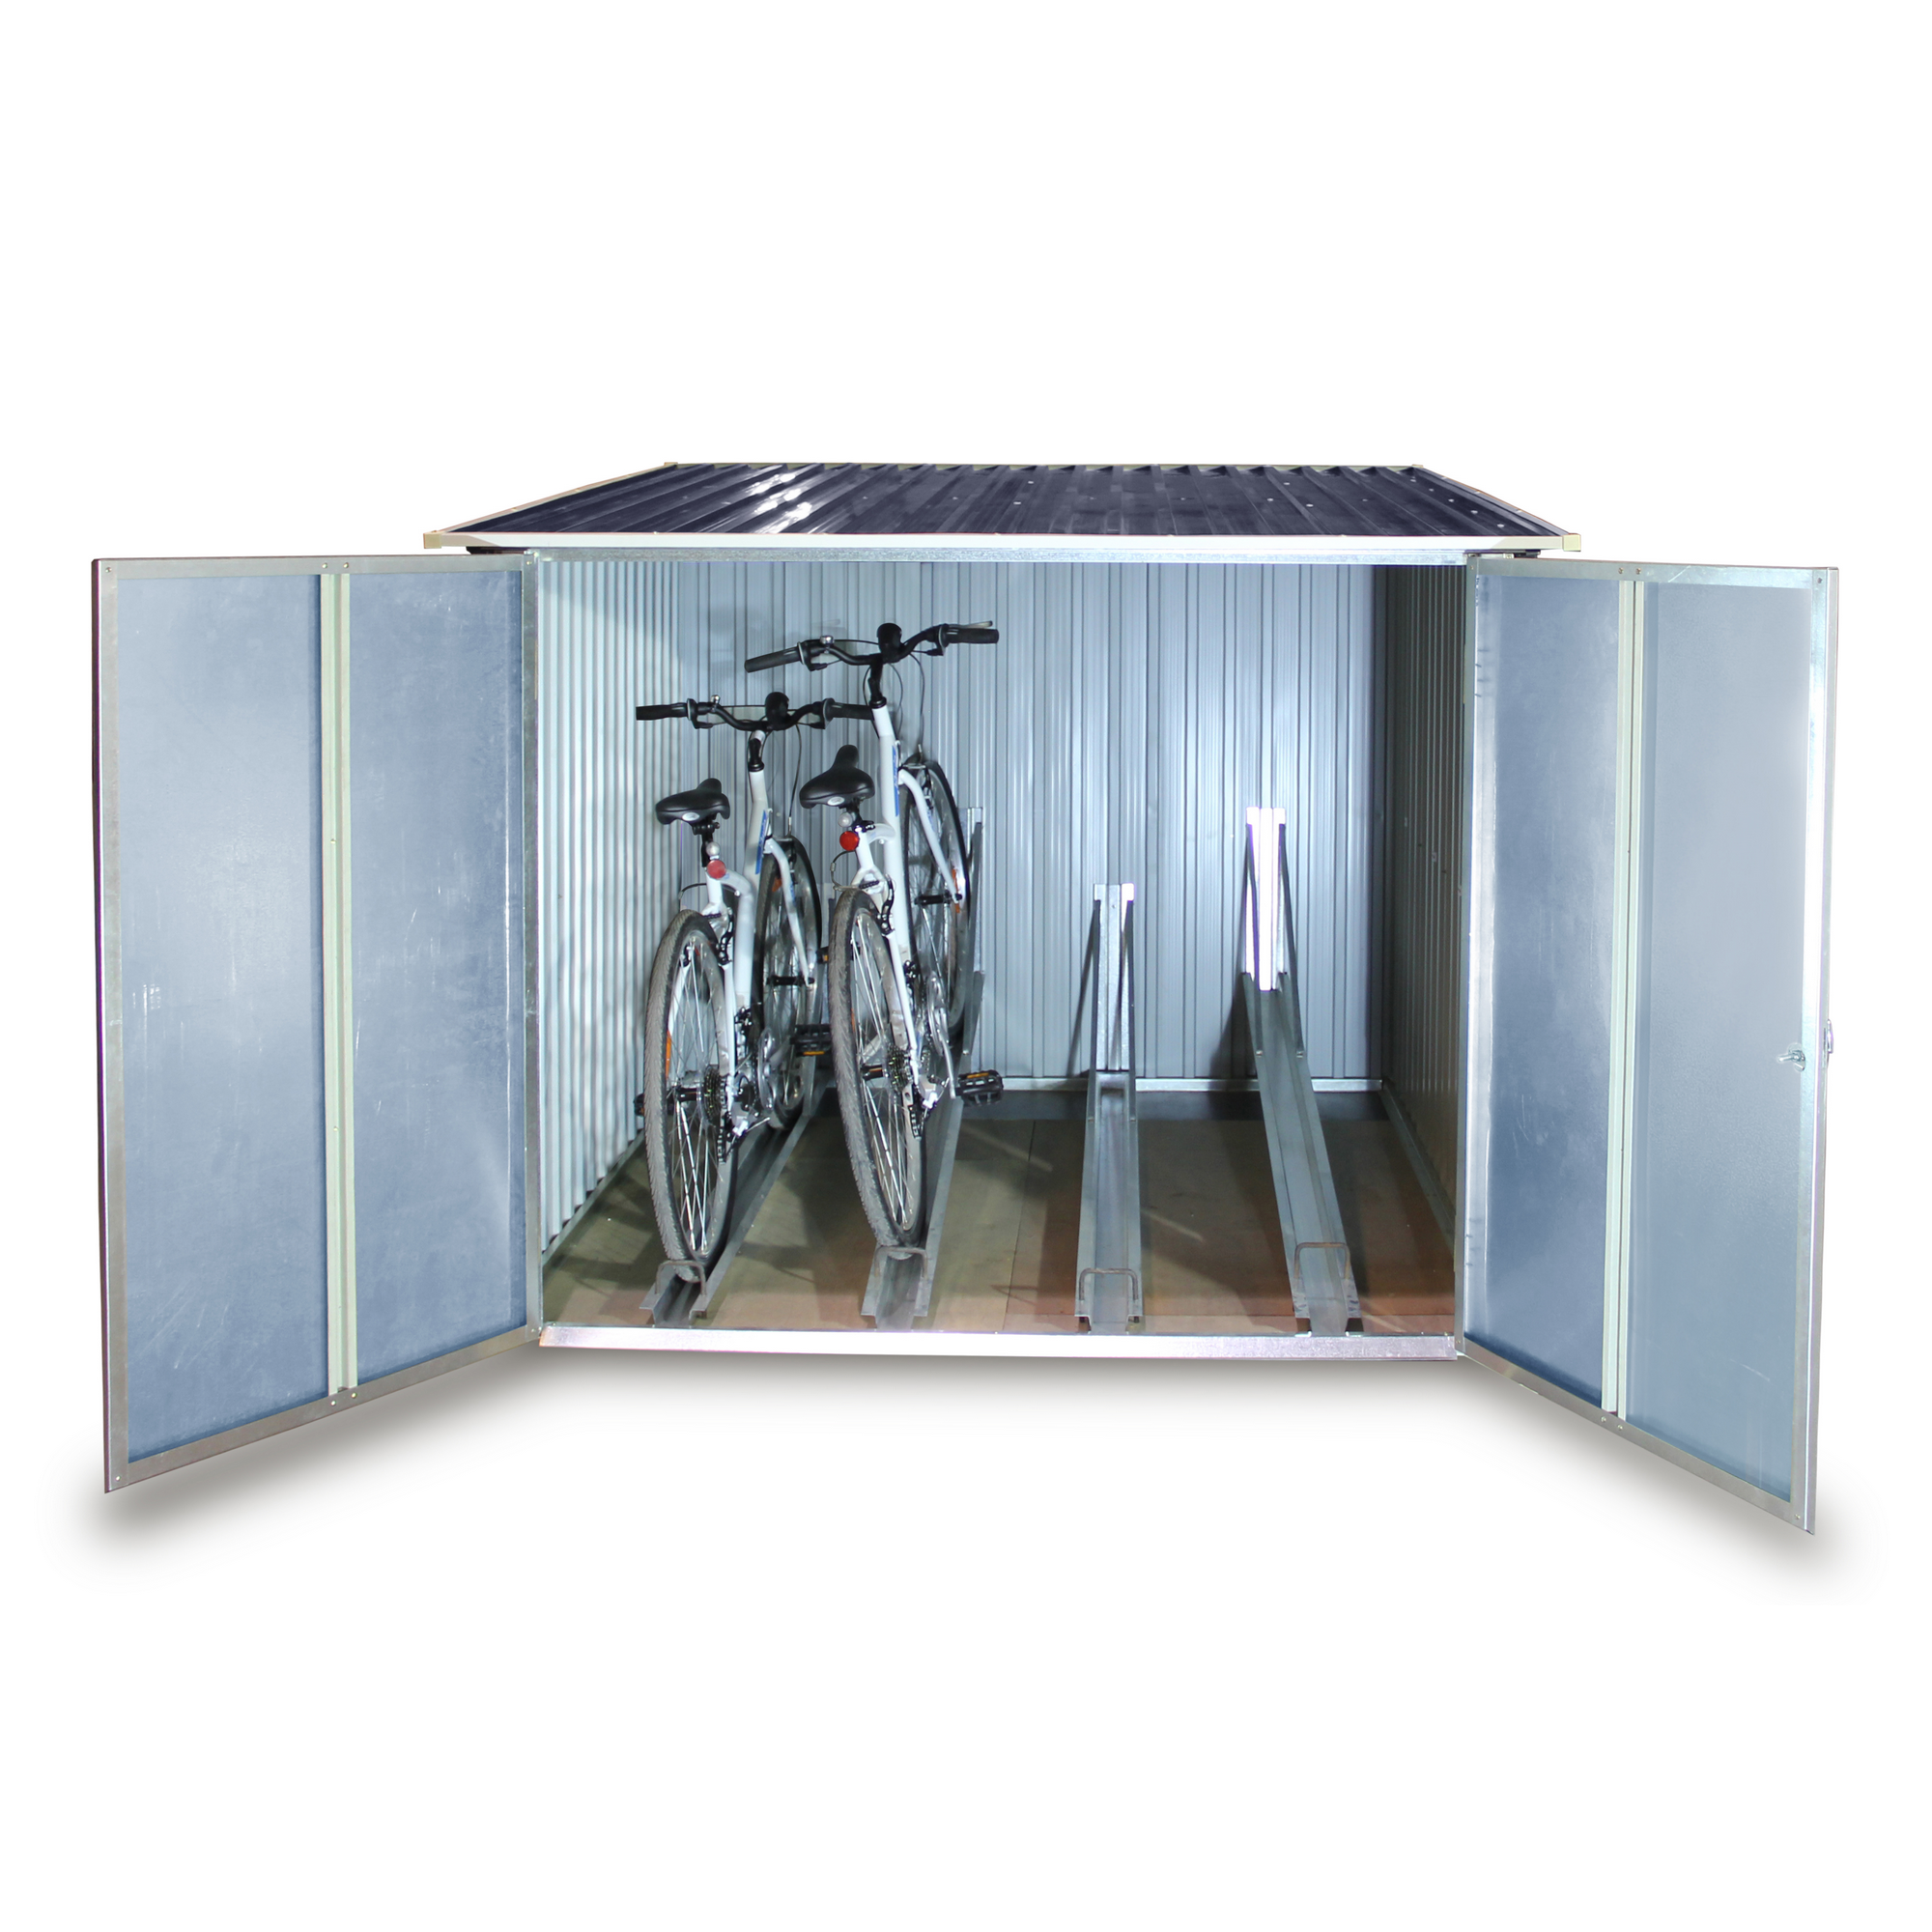 Fahrradbox für 4 Fahrräder anthrazit 203 x 202 x 163 cm + product picture